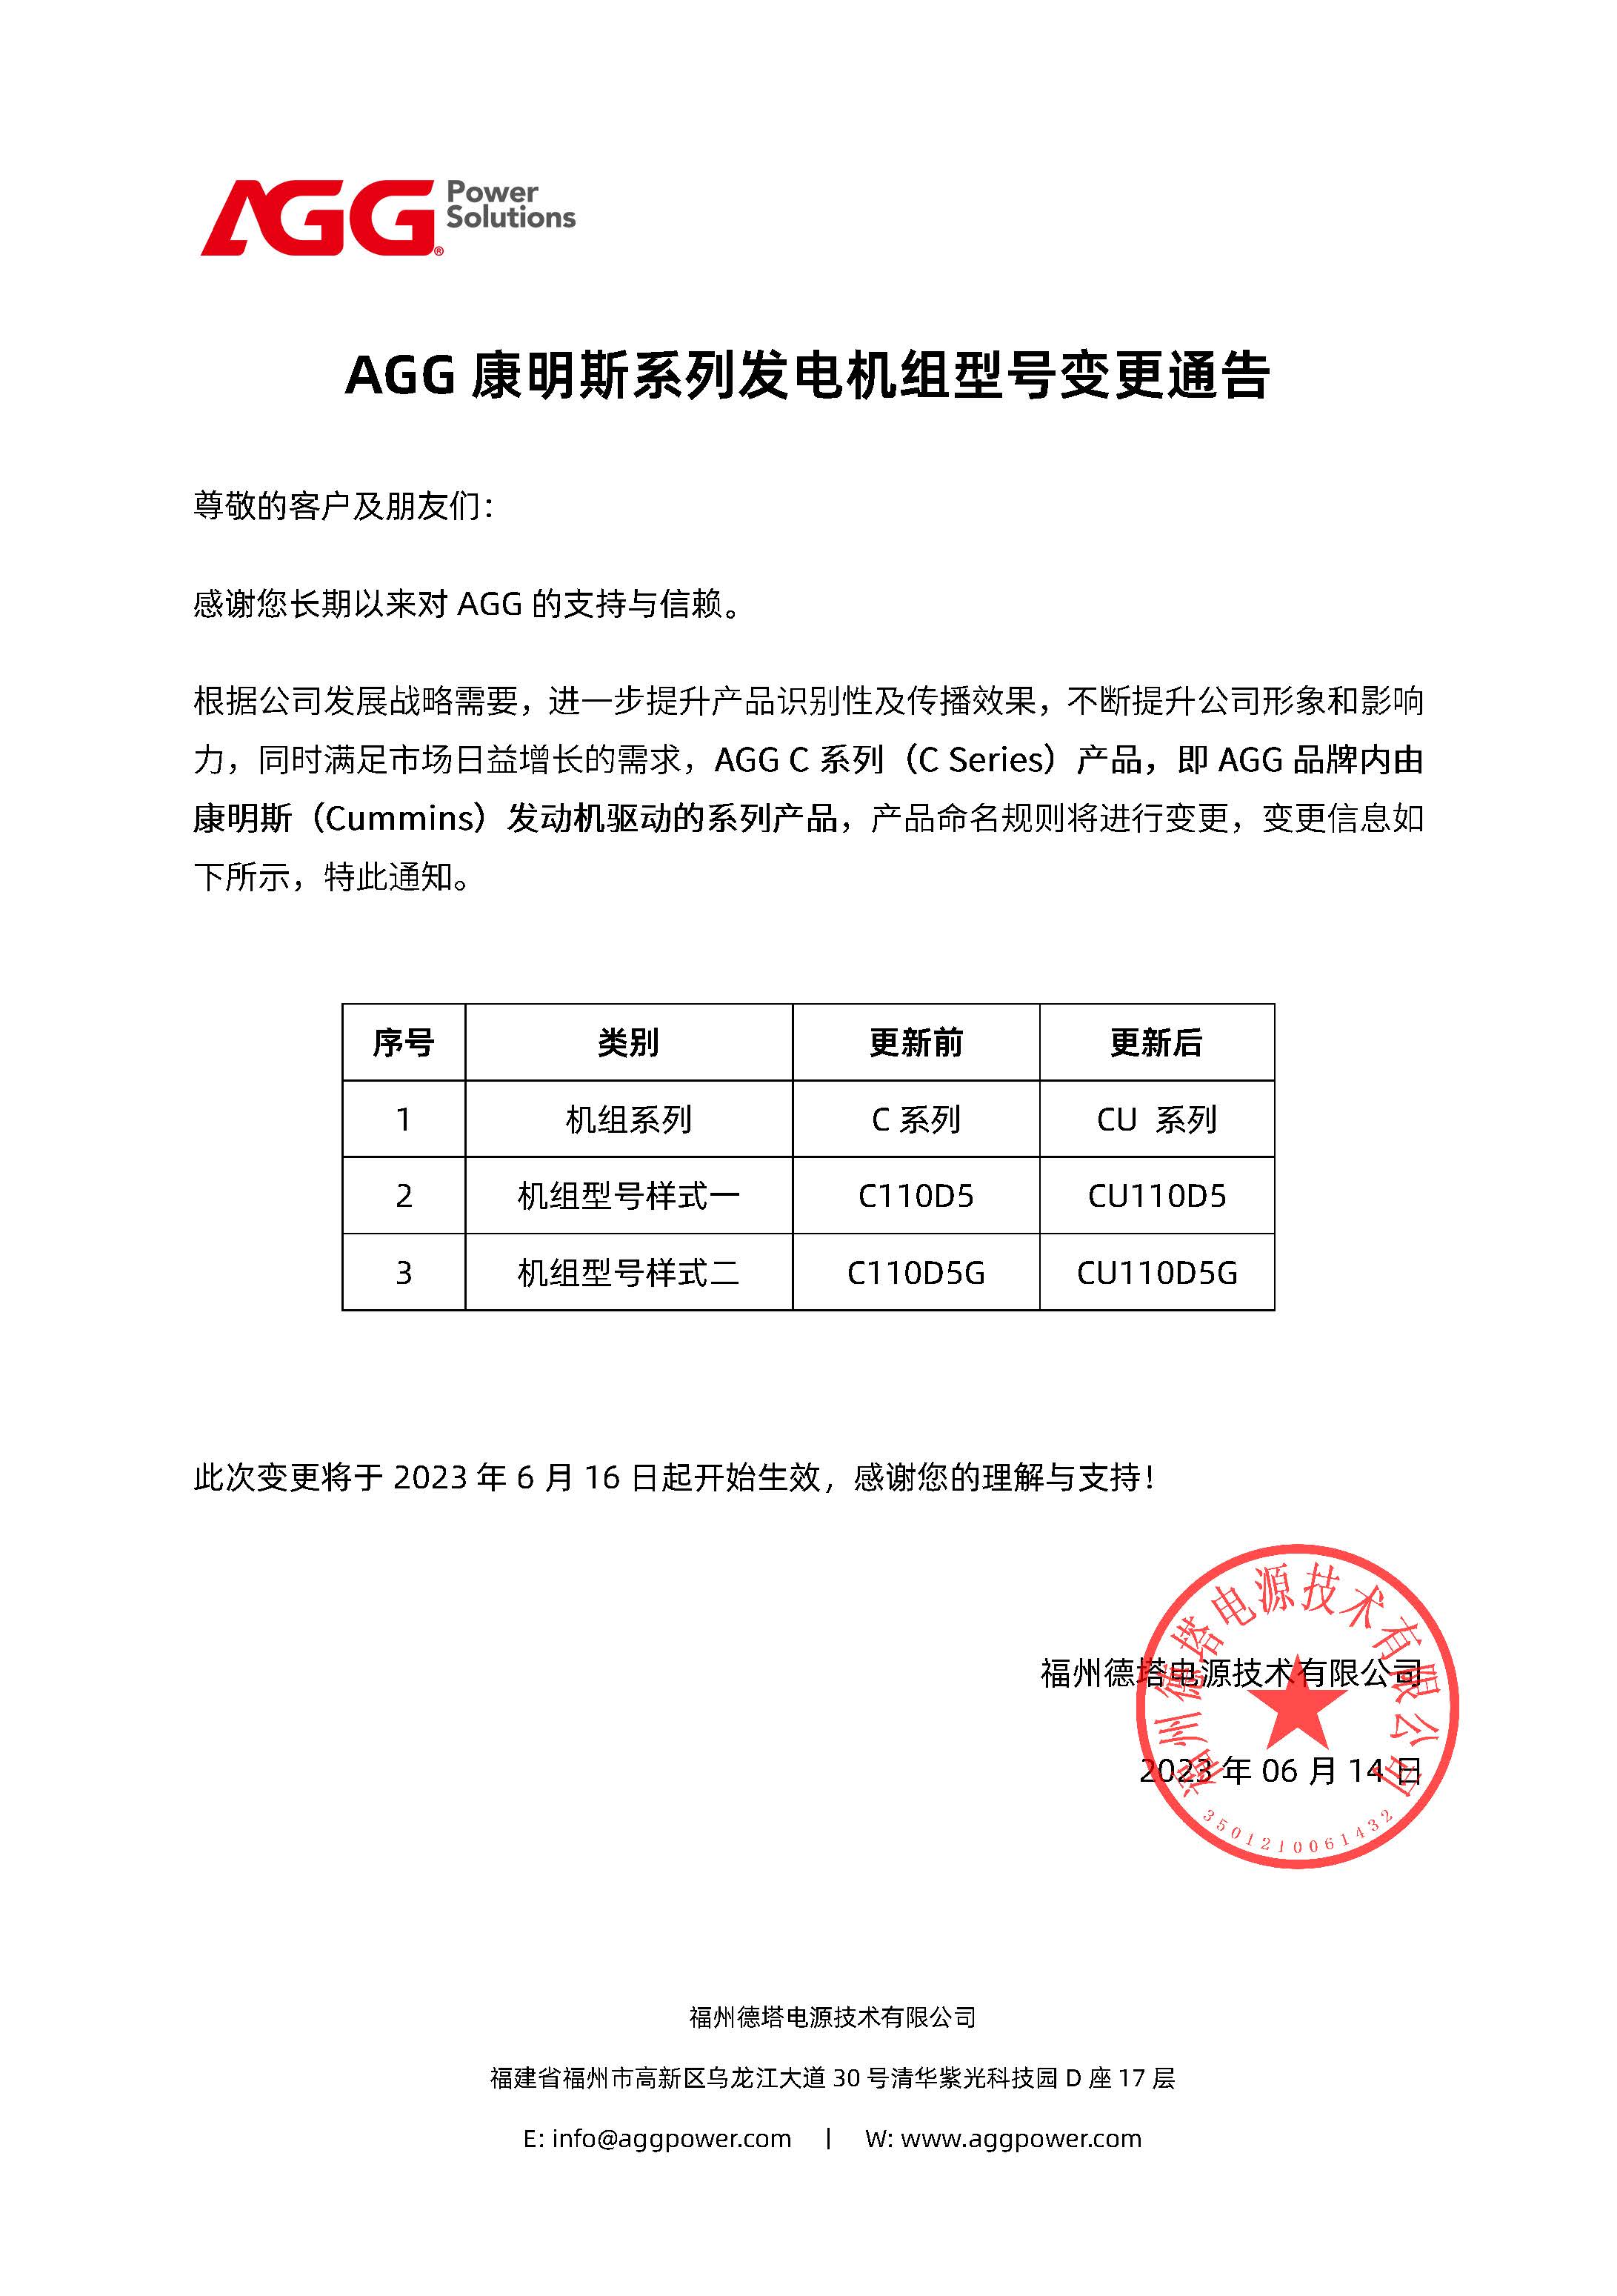 AGG康明斯系列发电机组型号更新通告（中文版）.jpg